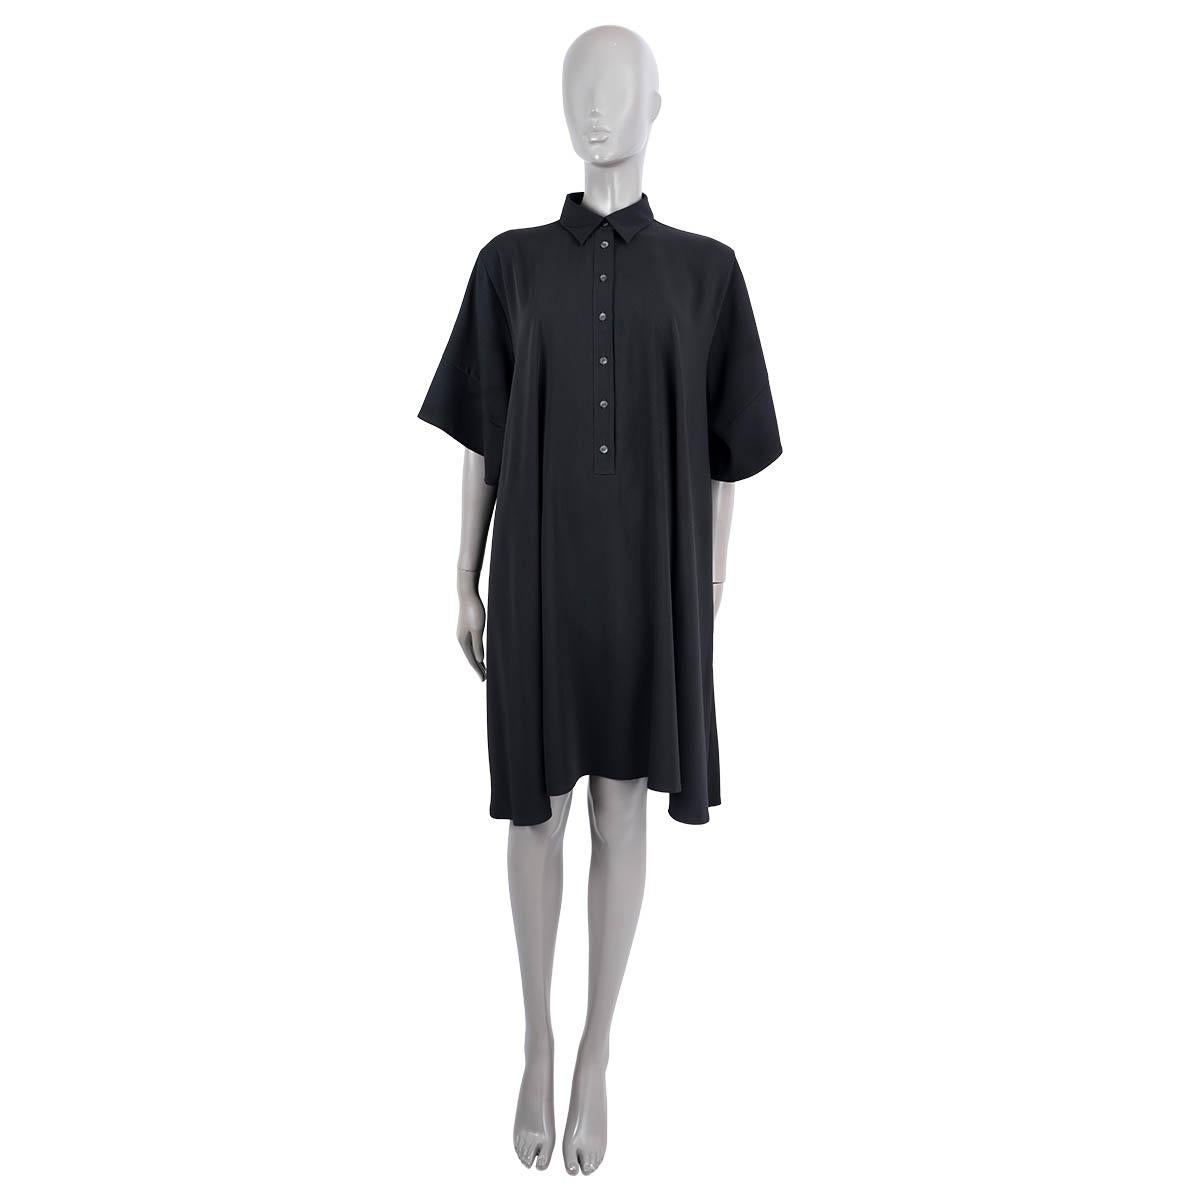 100% authentisches MM6 Maison Margiela kurzärmeliges, übergroßes Hemdblusenkleid in A-Linie aus schwarzem Polyester (100%). Das Design umfasst sechs Tasten auf der Vorderseite. Unbeschriftet. Wurde getragen und ist in ausgezeichnetem